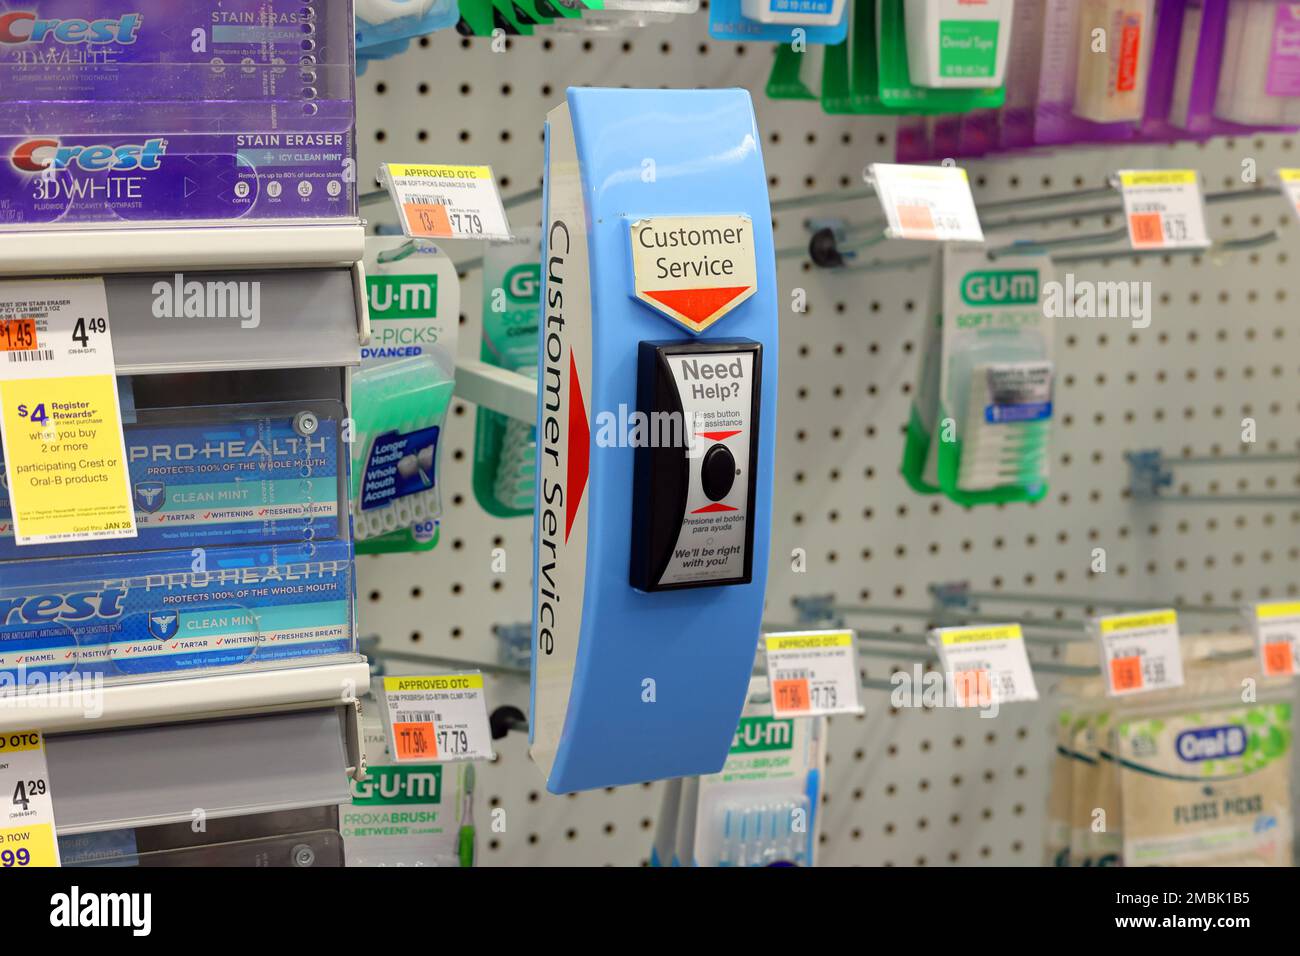 Un bouton d'appel du service client sans fil dans une pharmacie Duane Reade. Le bouton avertit les employés d'un client qui demande de l'aide pour obtenir des articles auprès de lo Banque D'Images